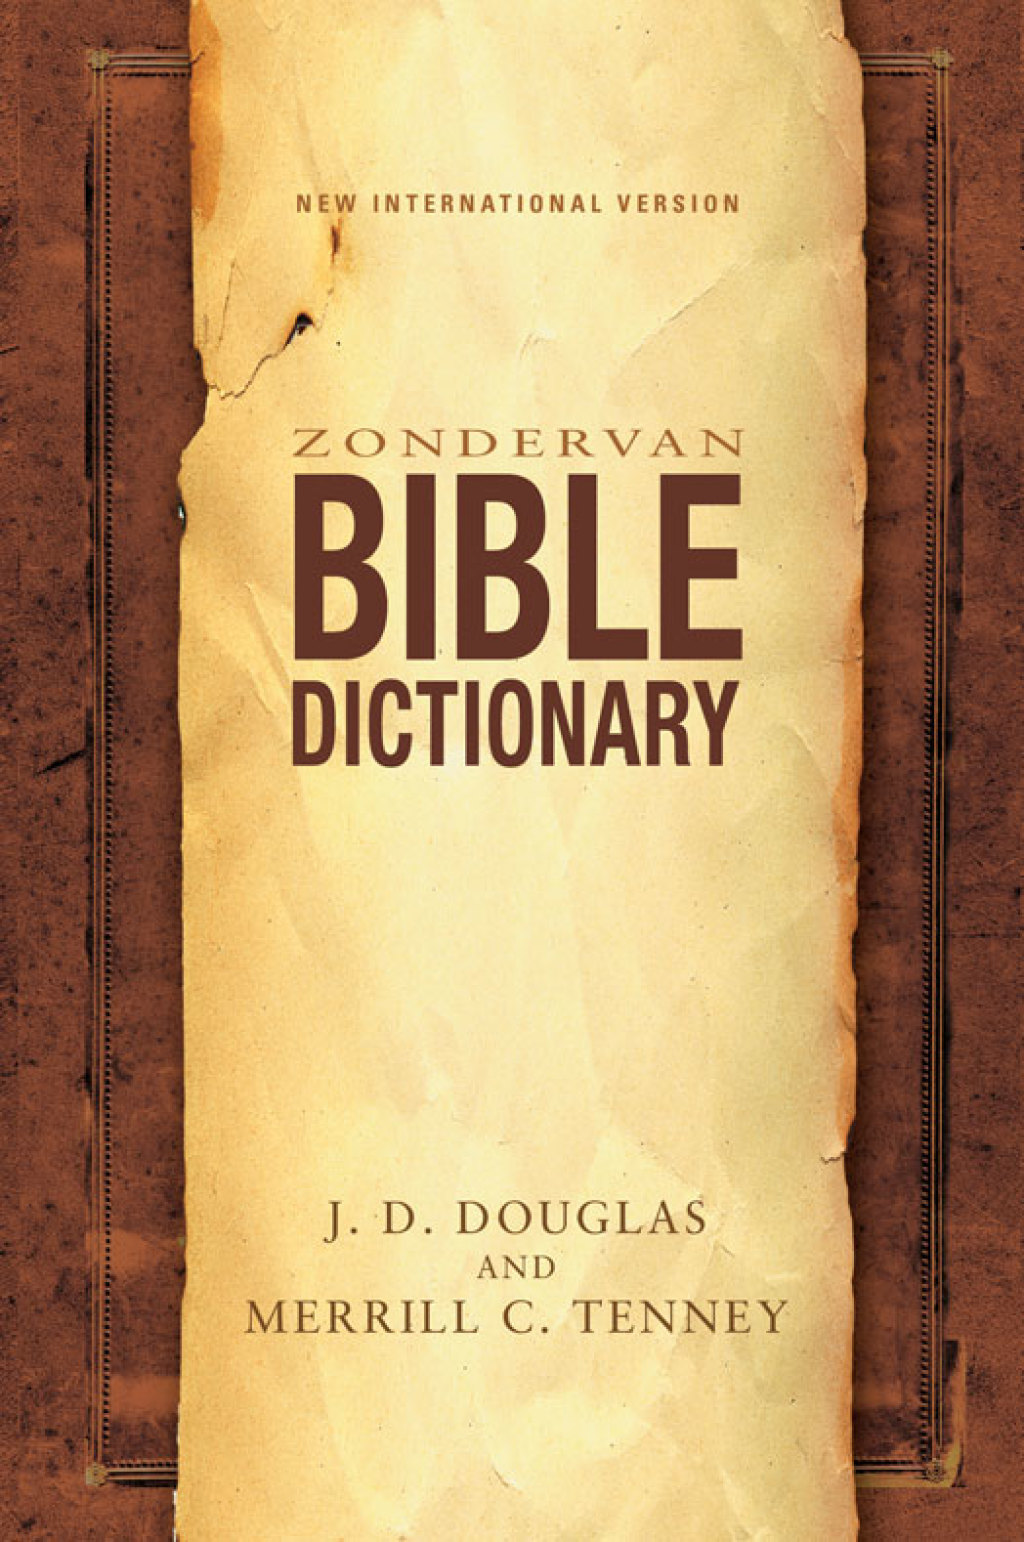 Zondervan Bible Dictionary (eBook) - Zondervan,